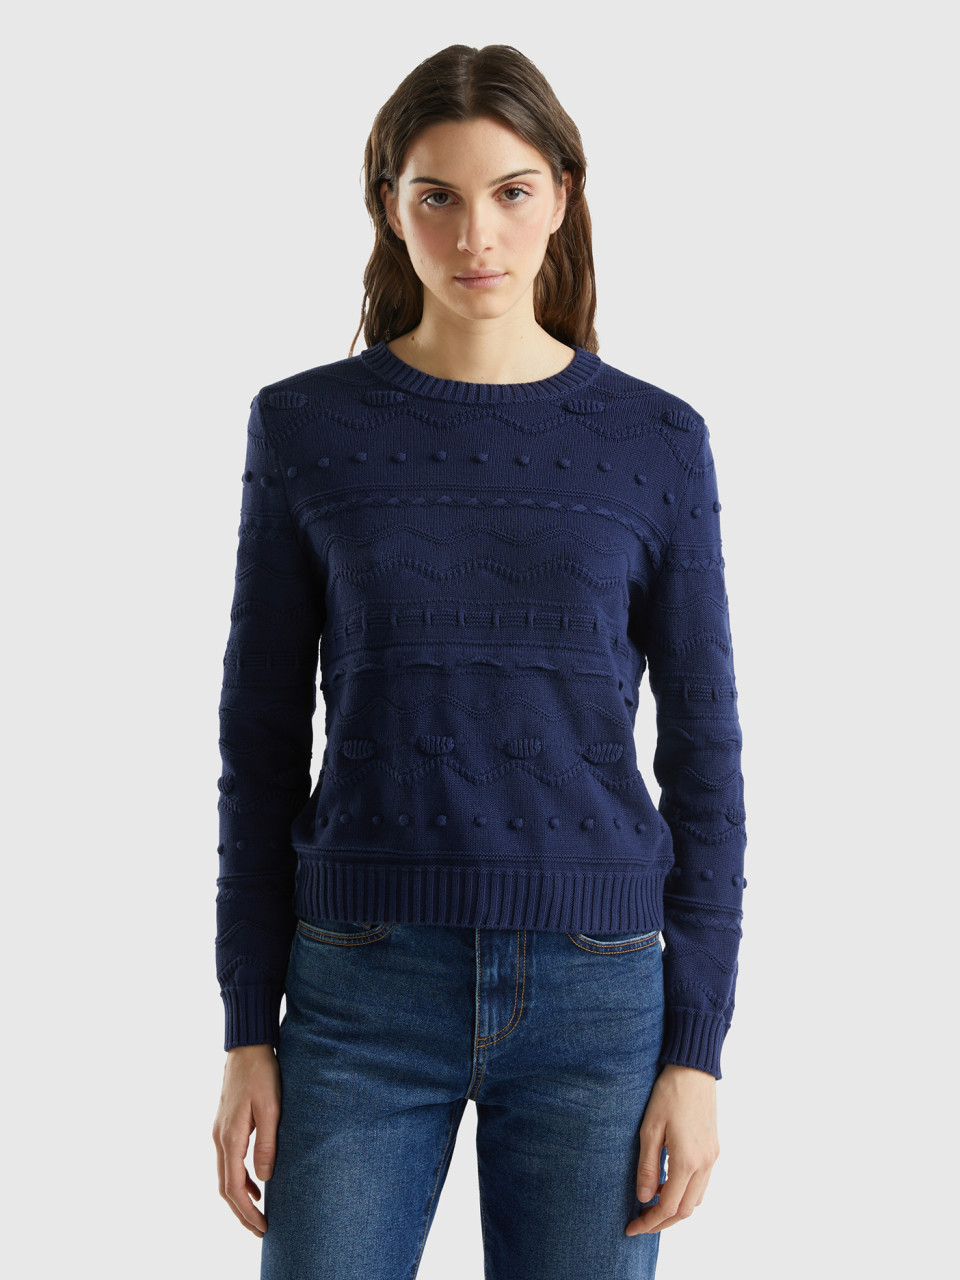 Benetton, Dark Blue Knitted Sweater, Dark Blue, Women